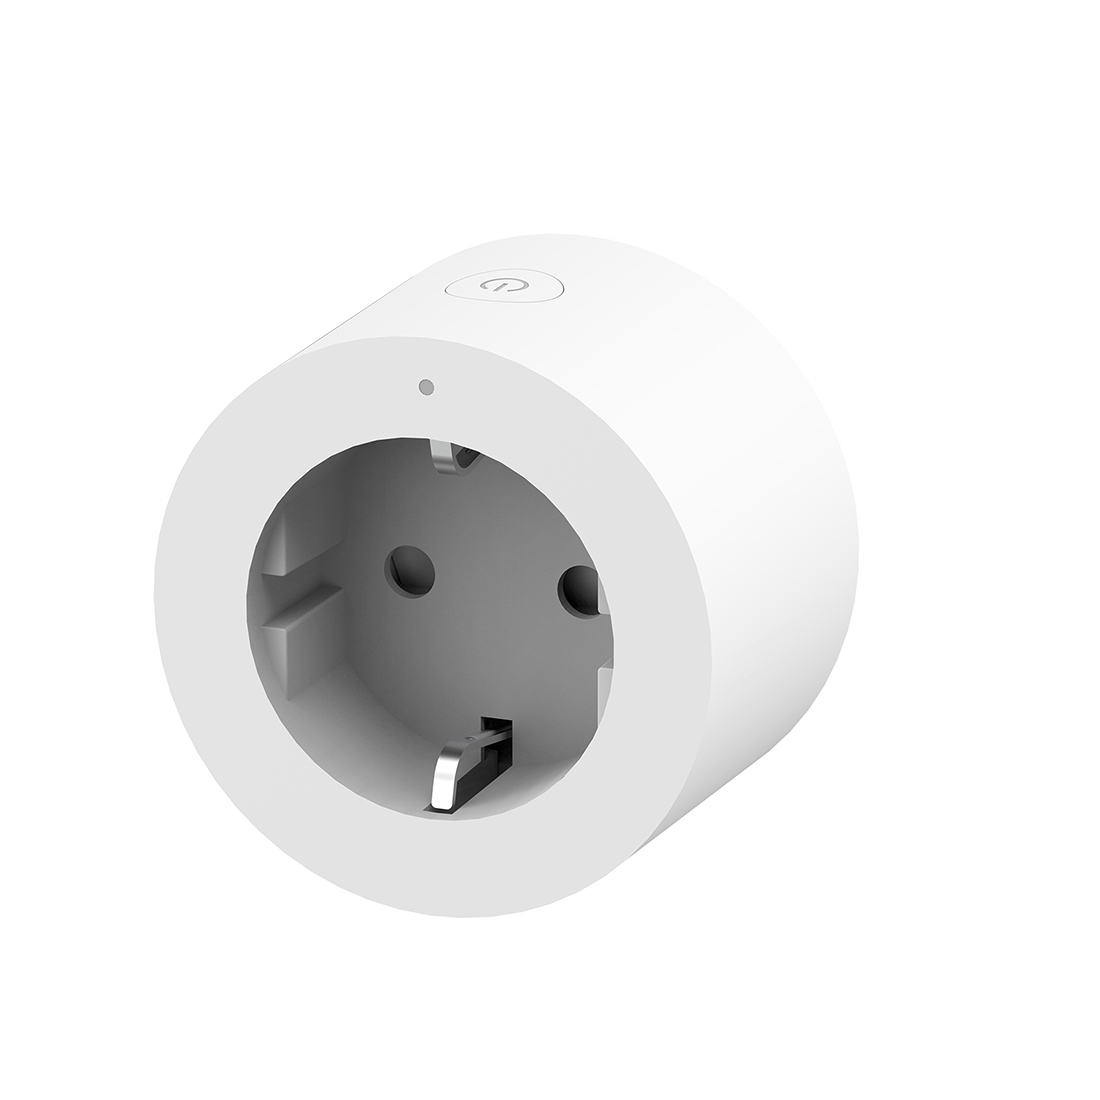 Умная розетка (переходник) Aqara Smart Plug (EU) (AP007EUW01)